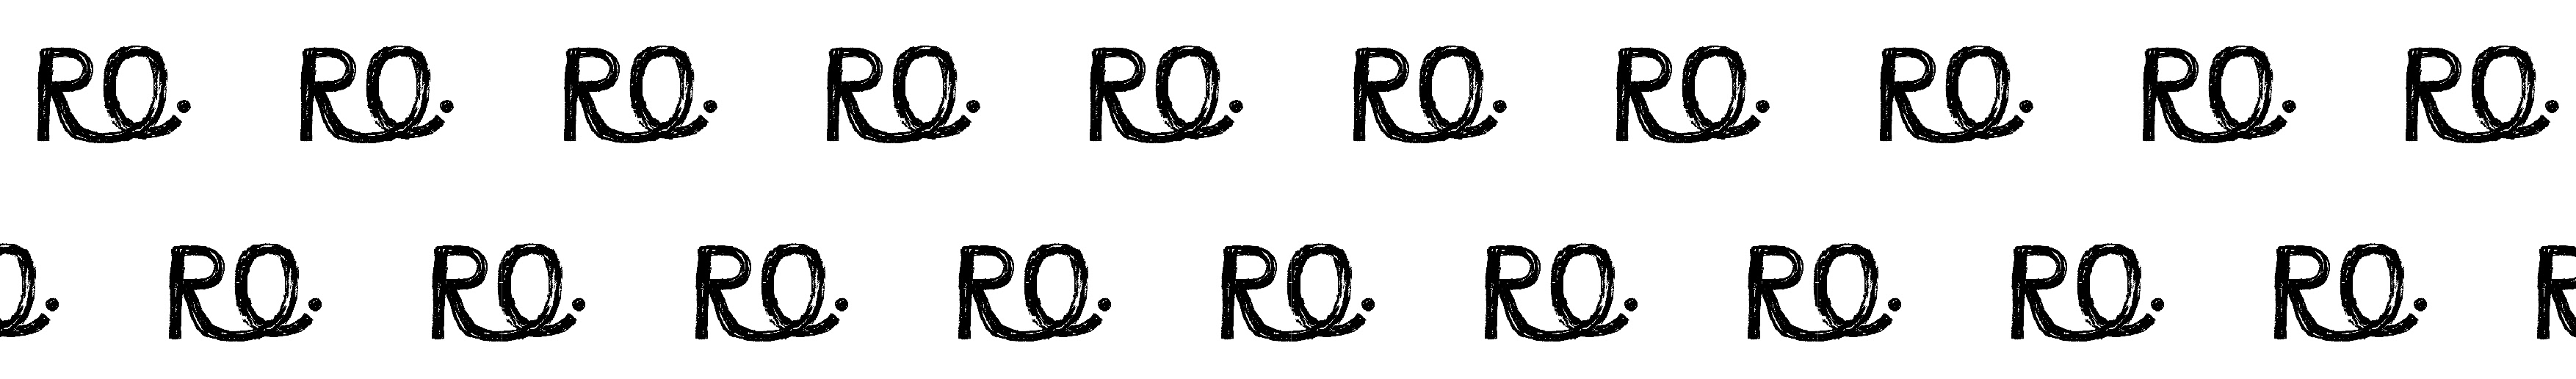 RO Designs's profile banner